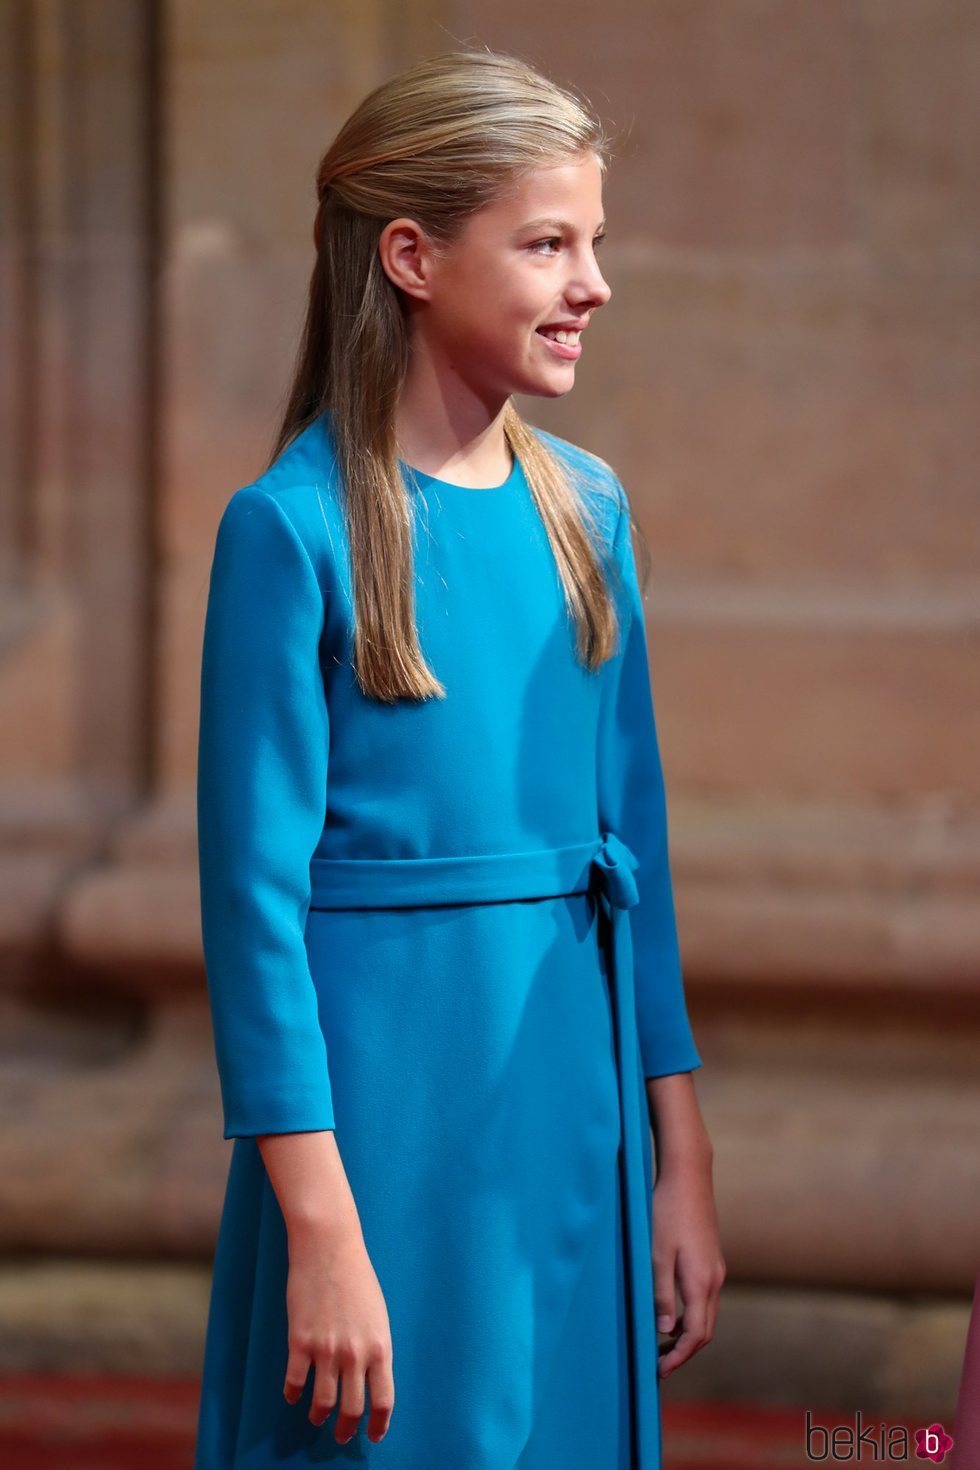 La Infanta Sofía en la recepción previa a los Premios Princesa de Asturias 2019